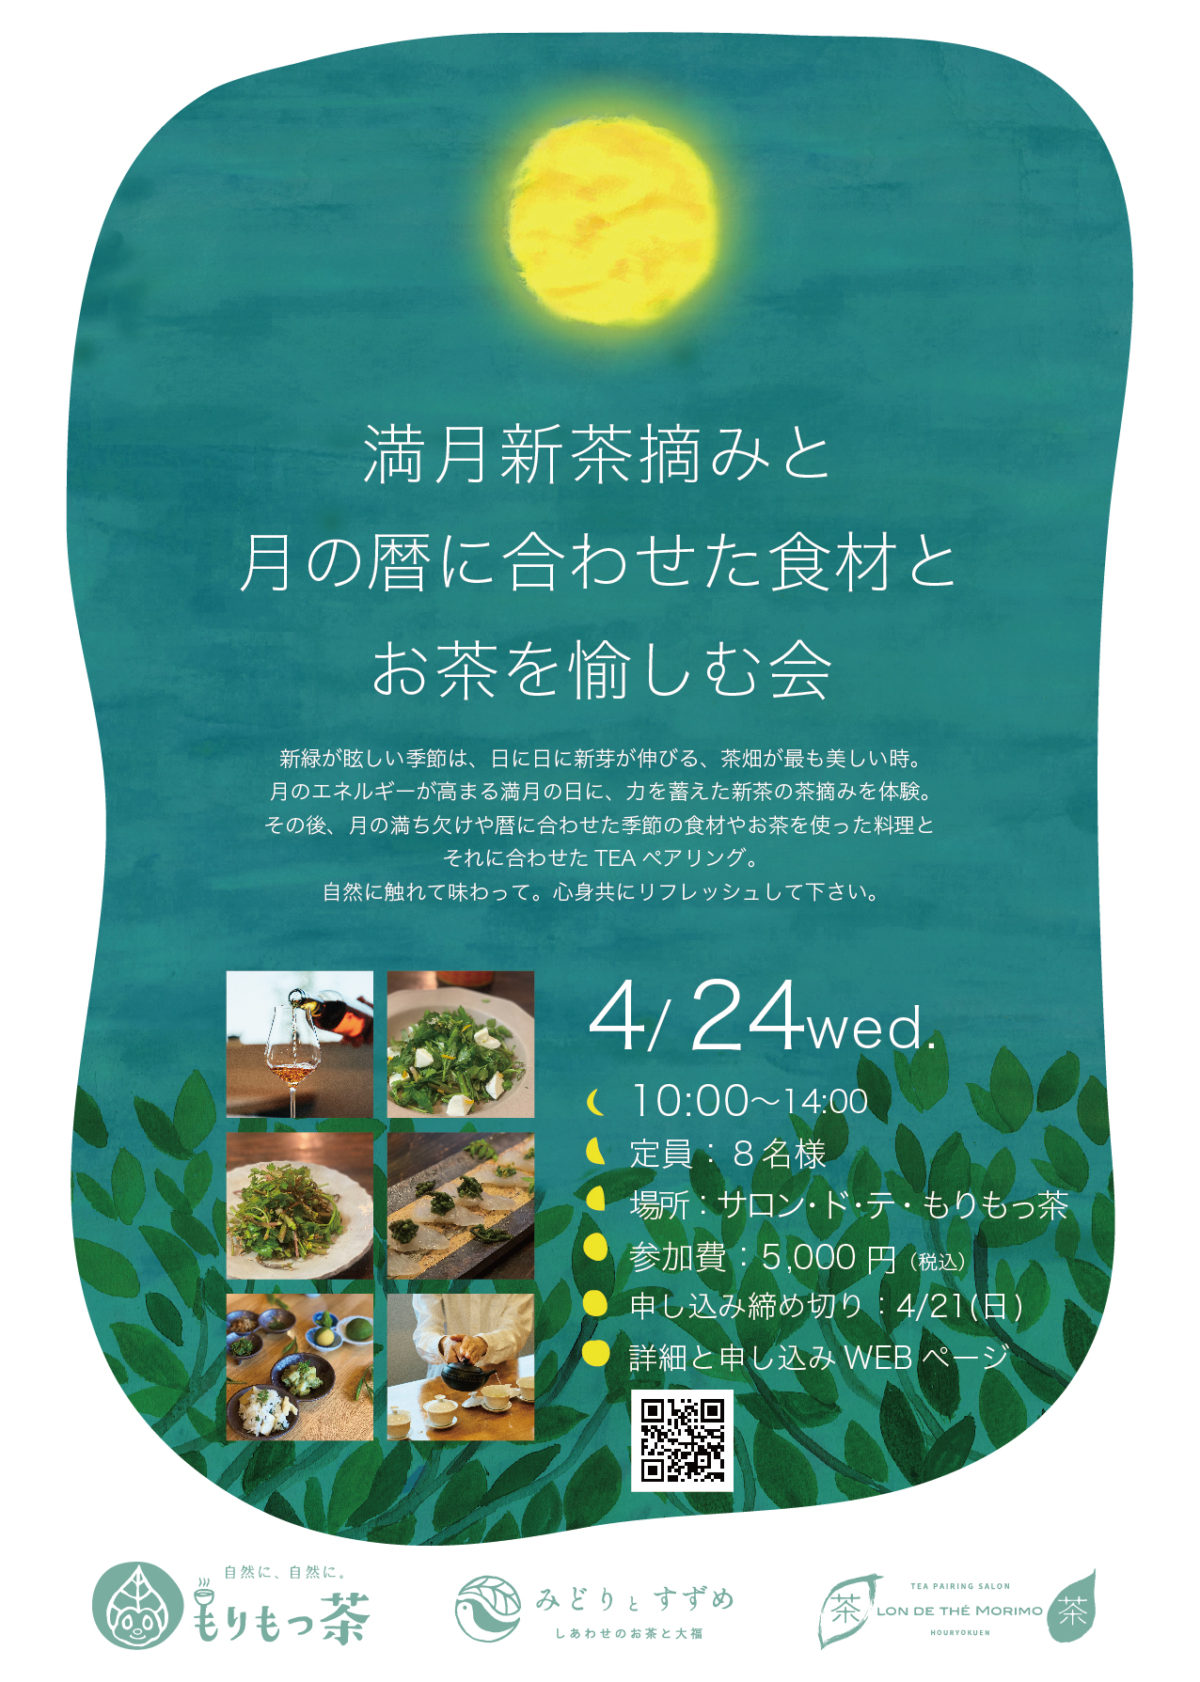 4/24「満月新茶摘みと月の暦に合わせた食材とお茶を愉しむ会」を開催しました。